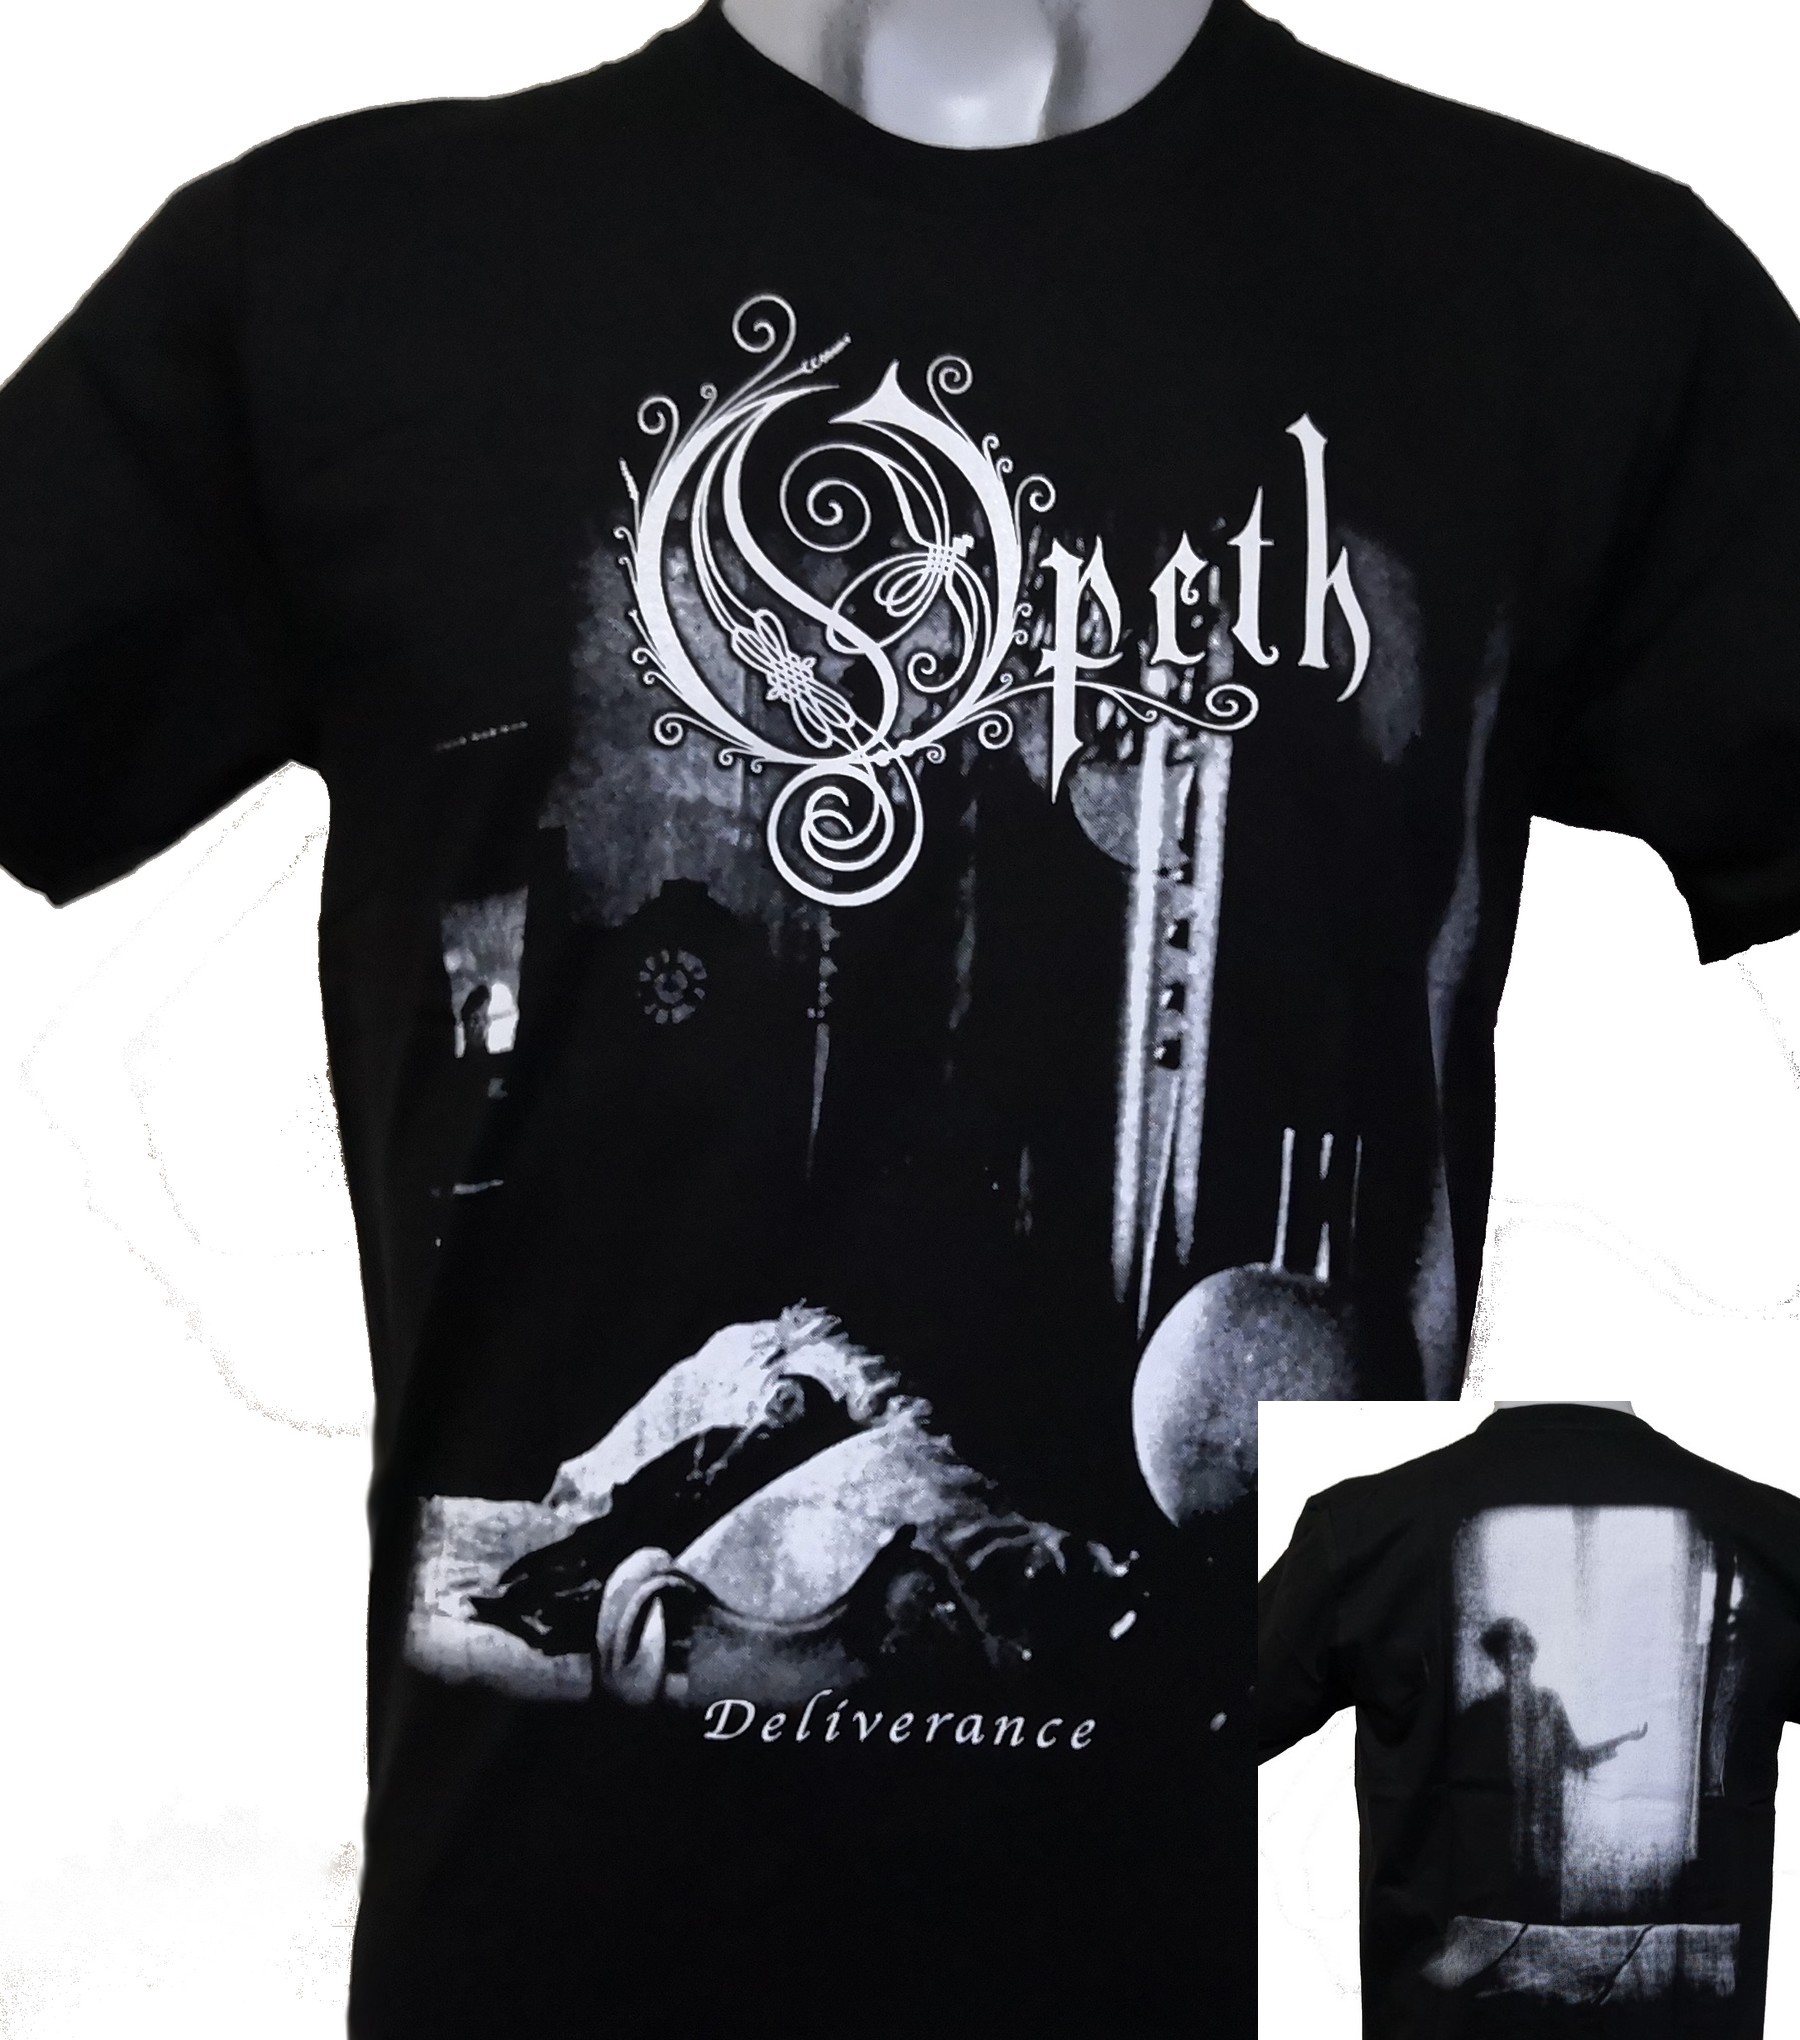 Gebruikelijk Met name gips Opeth t-shirt Deliverance size XXXL – RoxxBKK